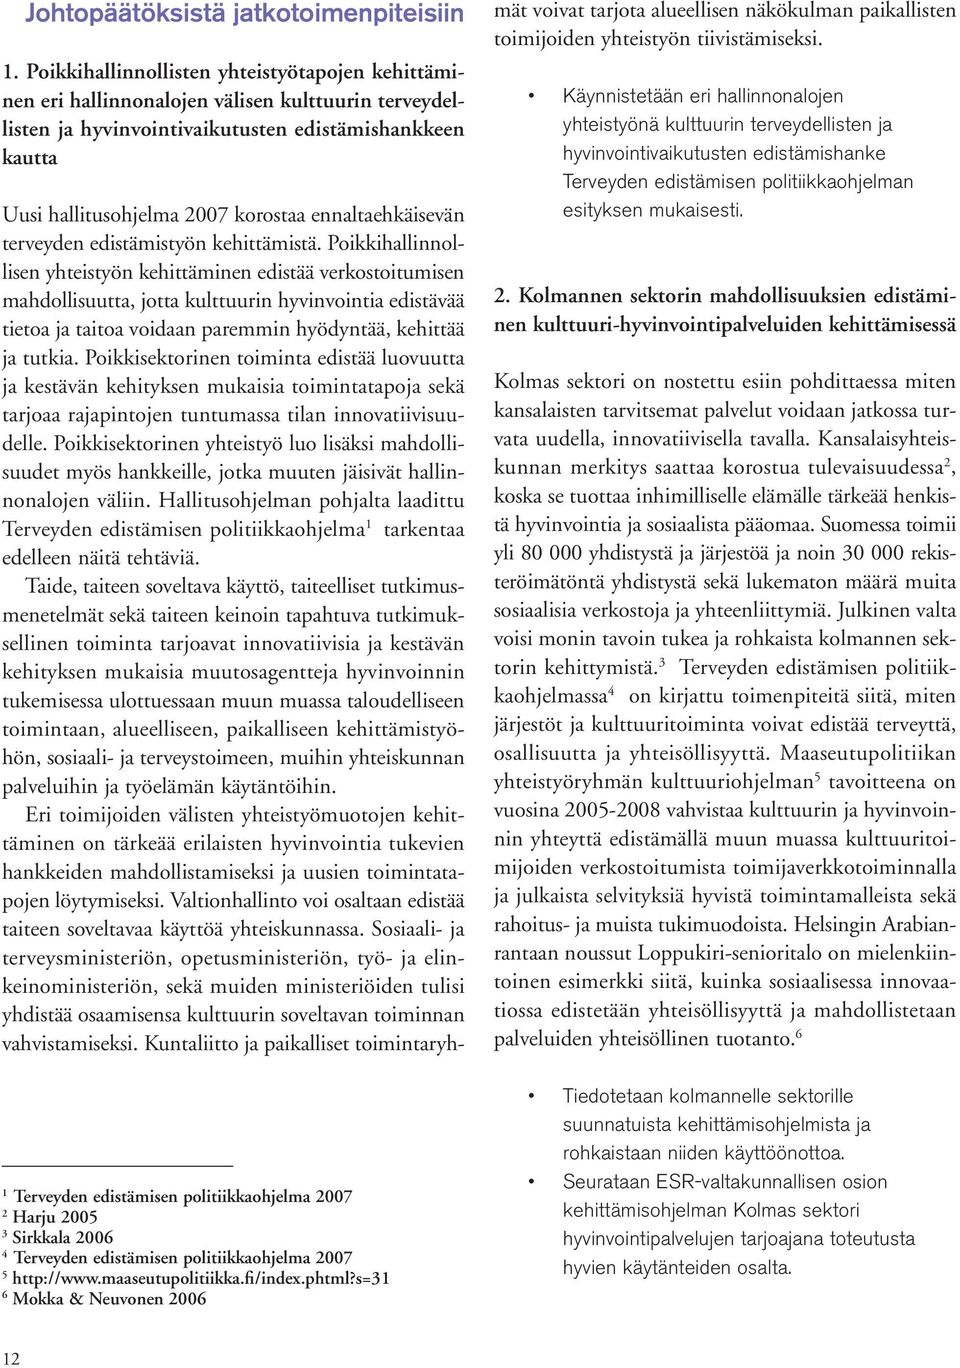 2007 2 Harju 2005 3 Sirkkala 2006 4 Terveyden edistämisen politiikkaohjelma 2007 5 http://www.maaseutupolitiikka.fi/index.phtml?